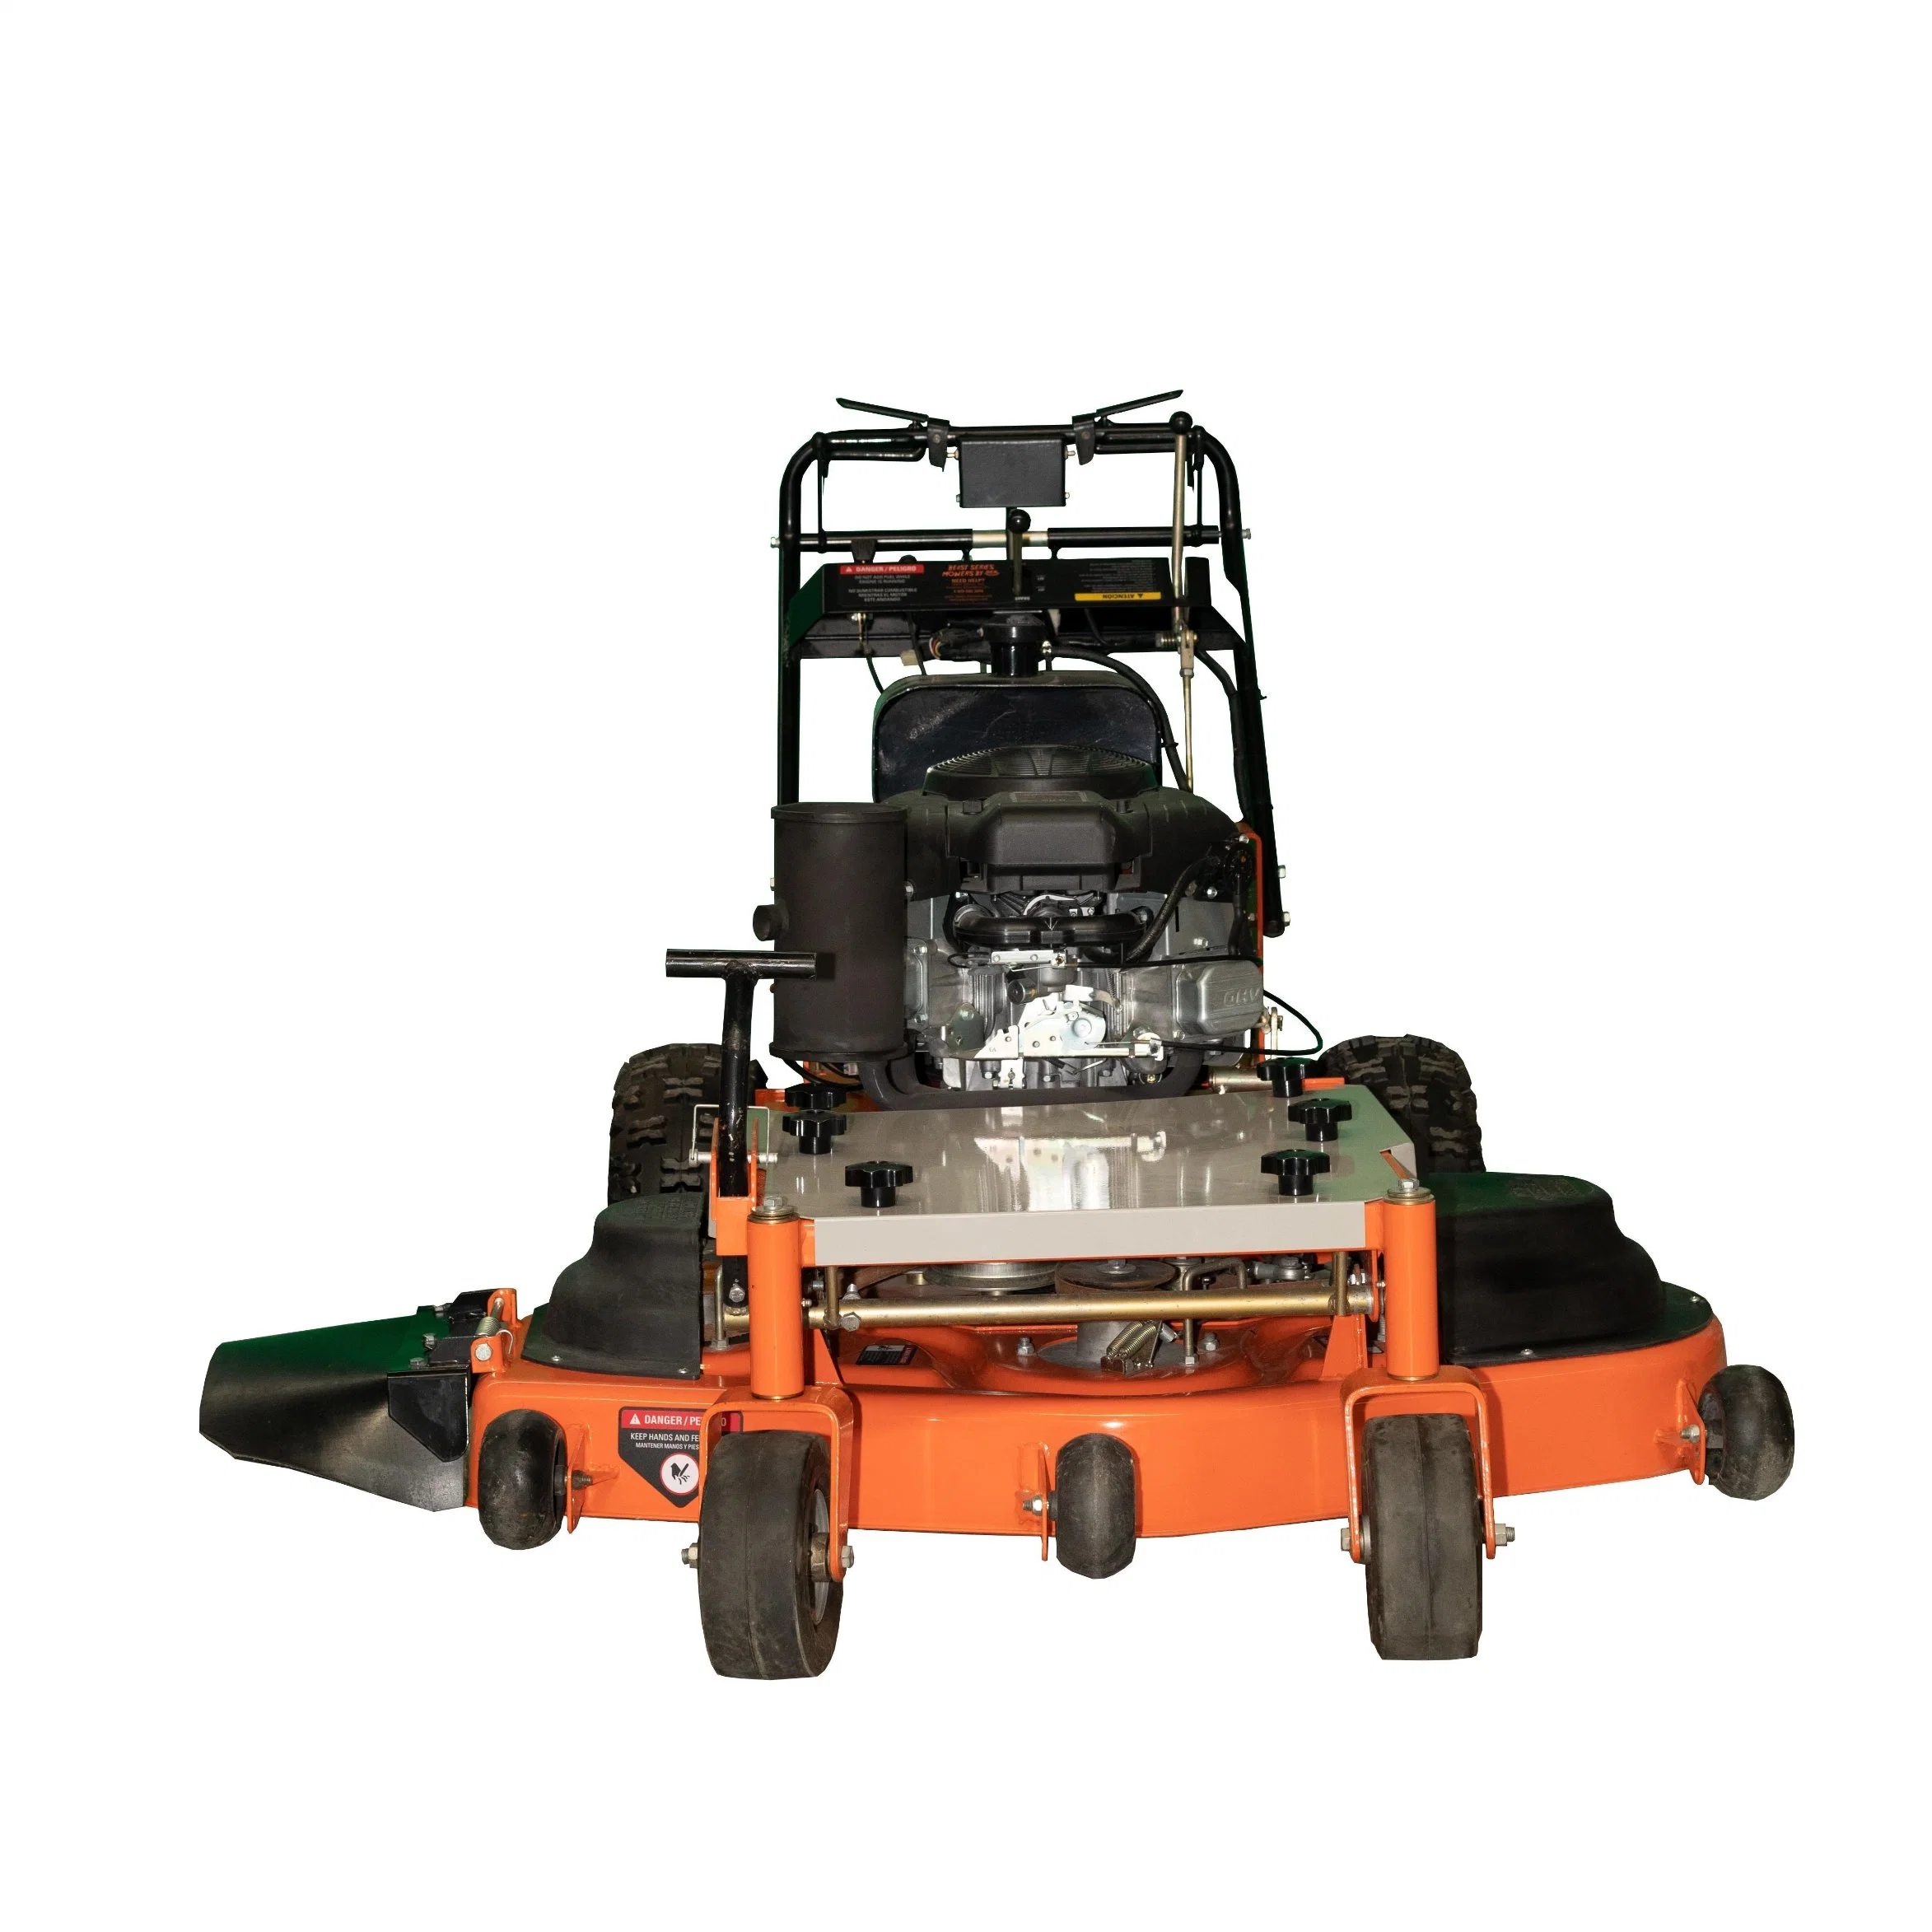 50 InchZero Turn Lawn Mower Motor de gasolina Paseo en el tractor